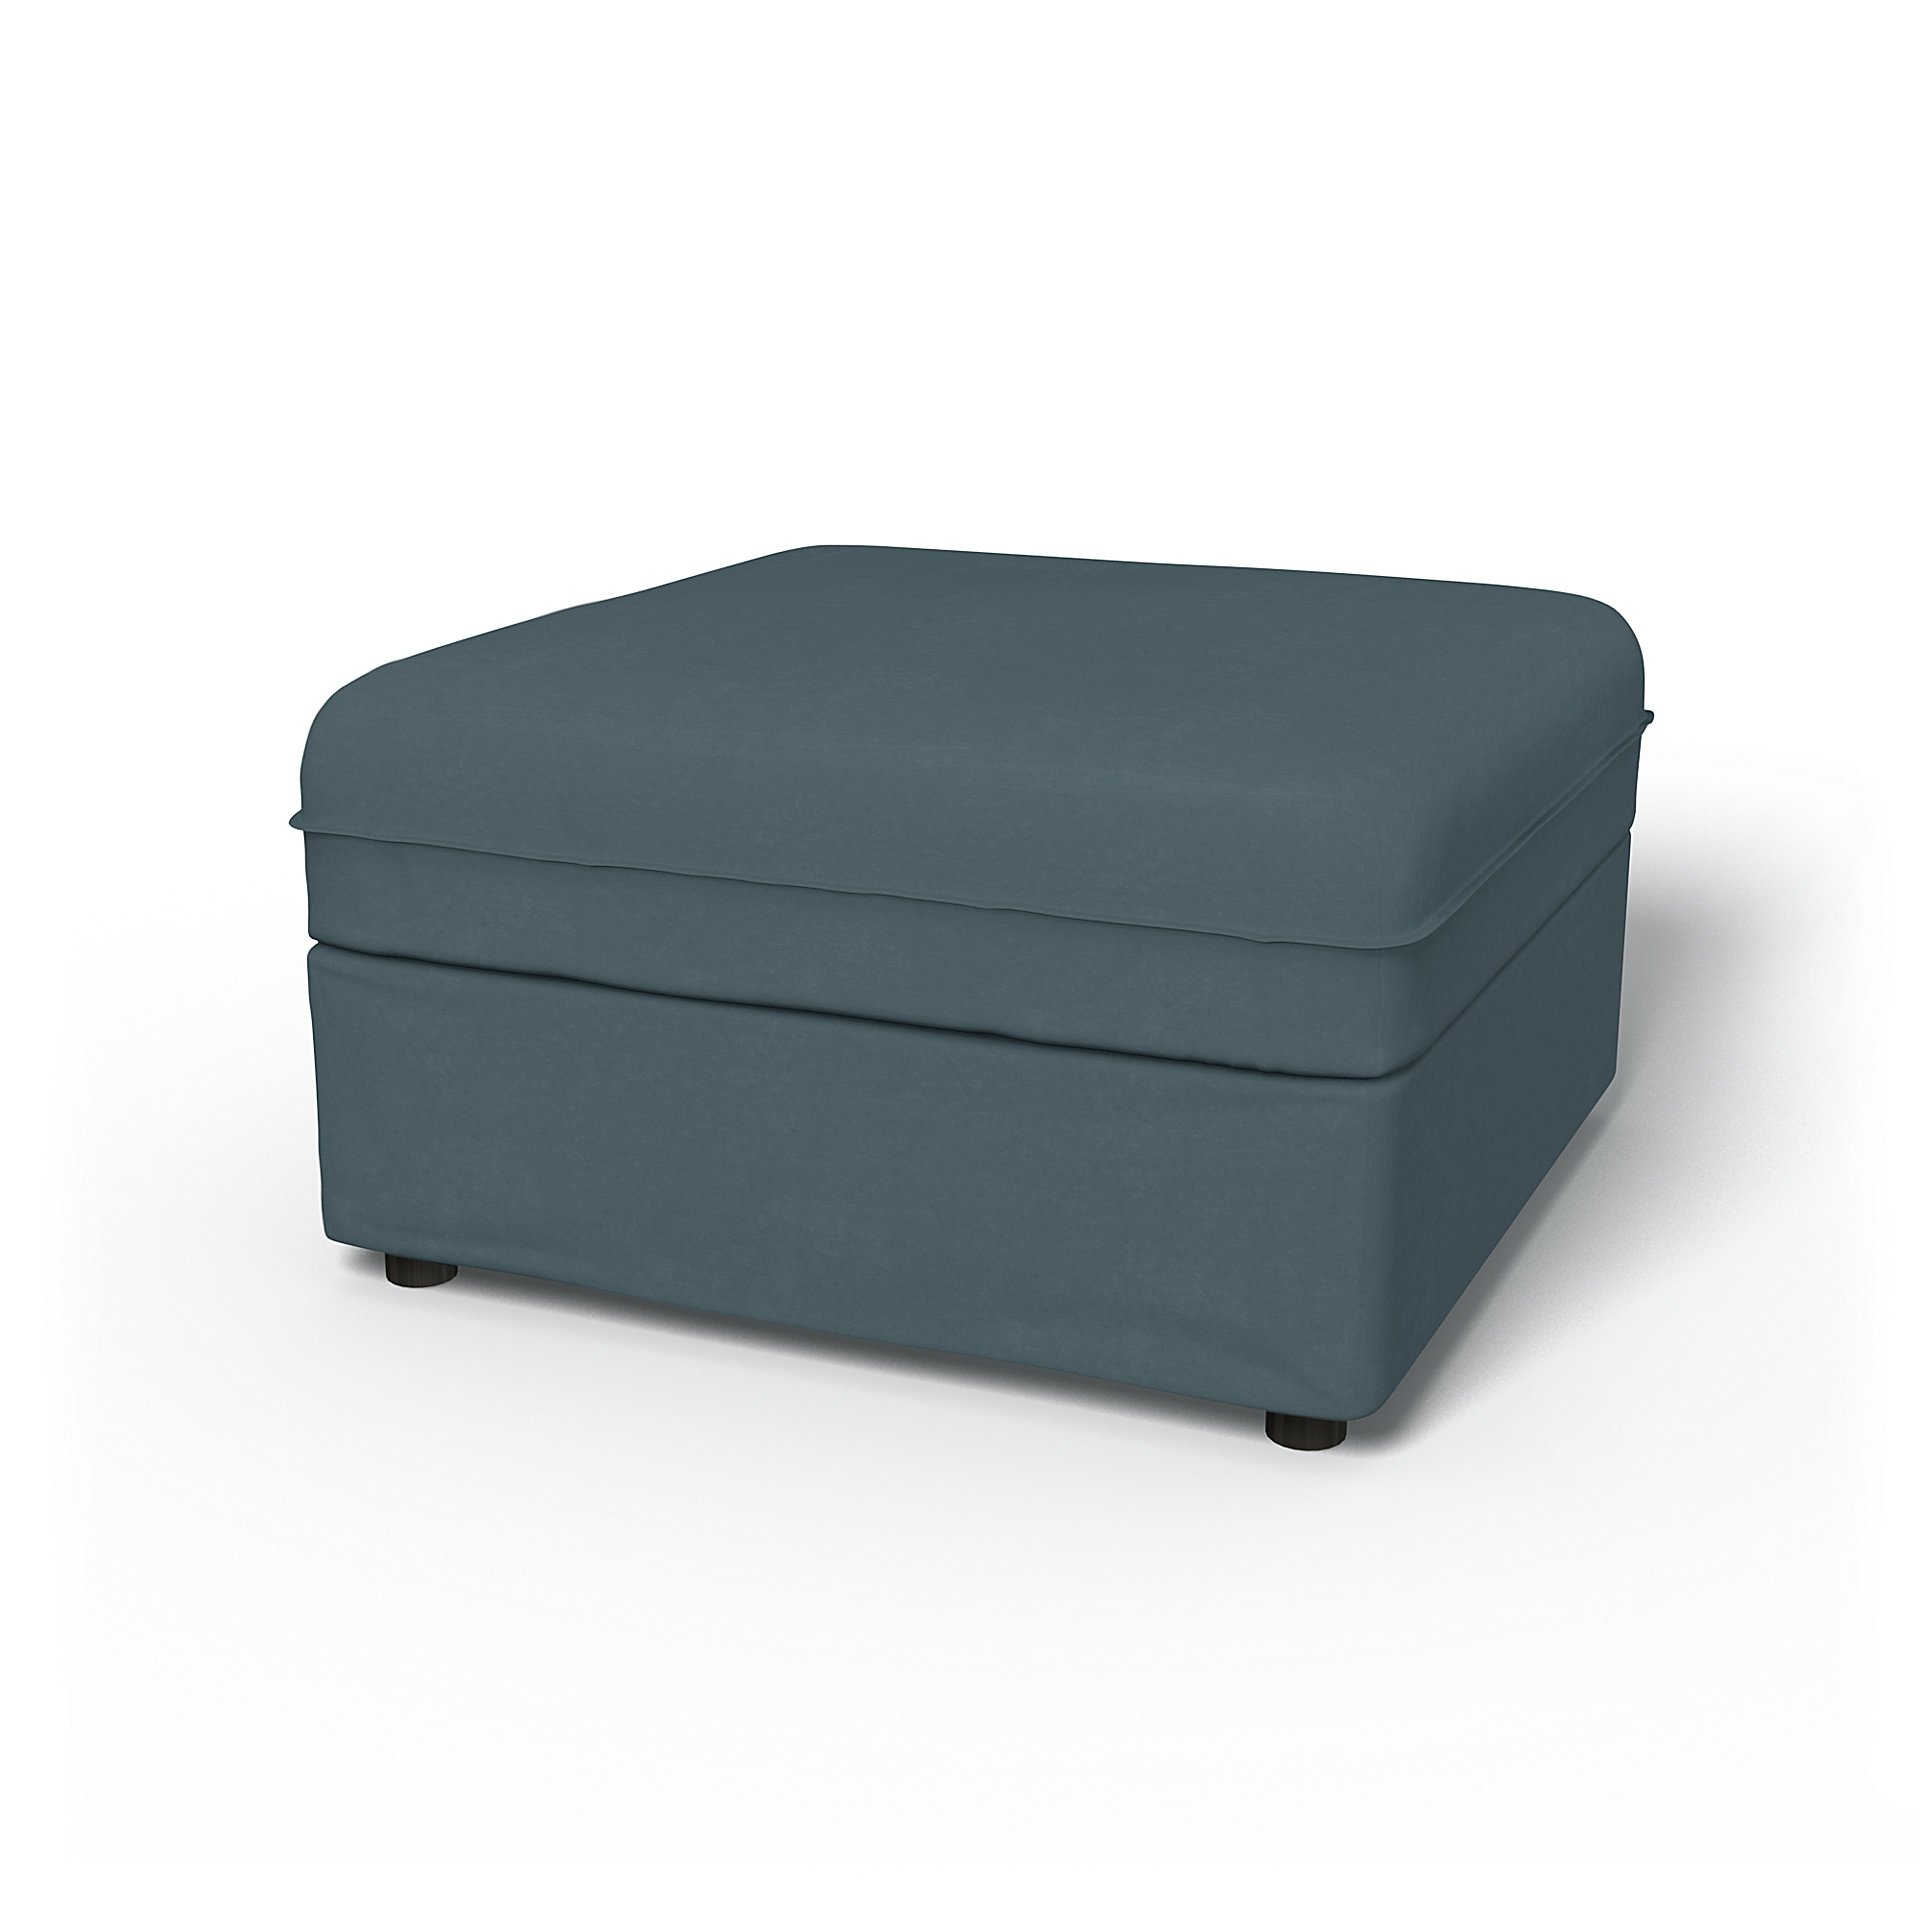 IKEA - Vallentuna Seat Module with Storage Cover 80x80cm 32x32in, Duck Egg, Velvet - Bemz